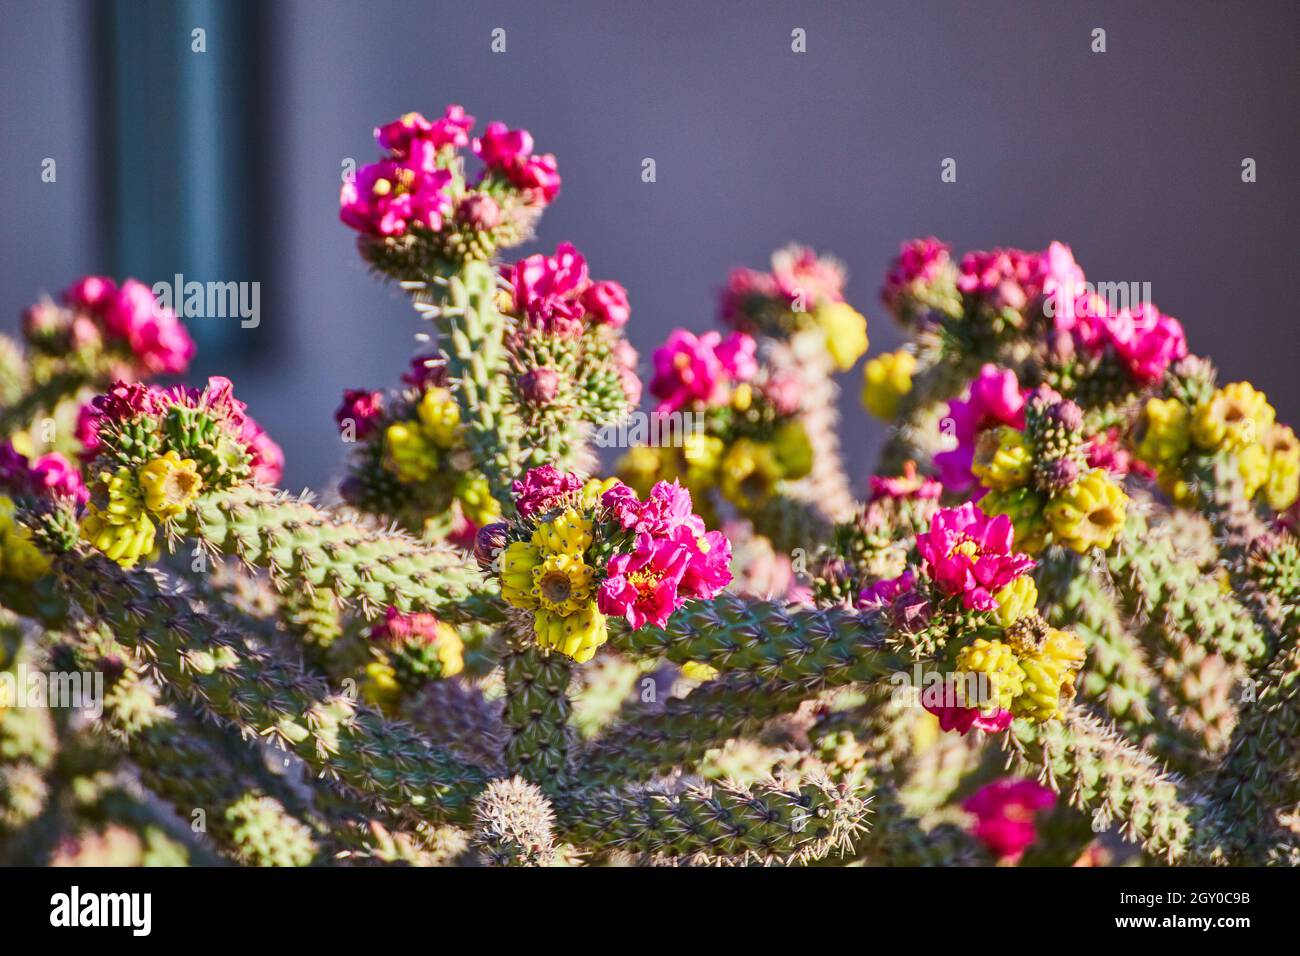 Dettaglio cactus colorato con fiori germoglianti rosa e giallo Foto Stock